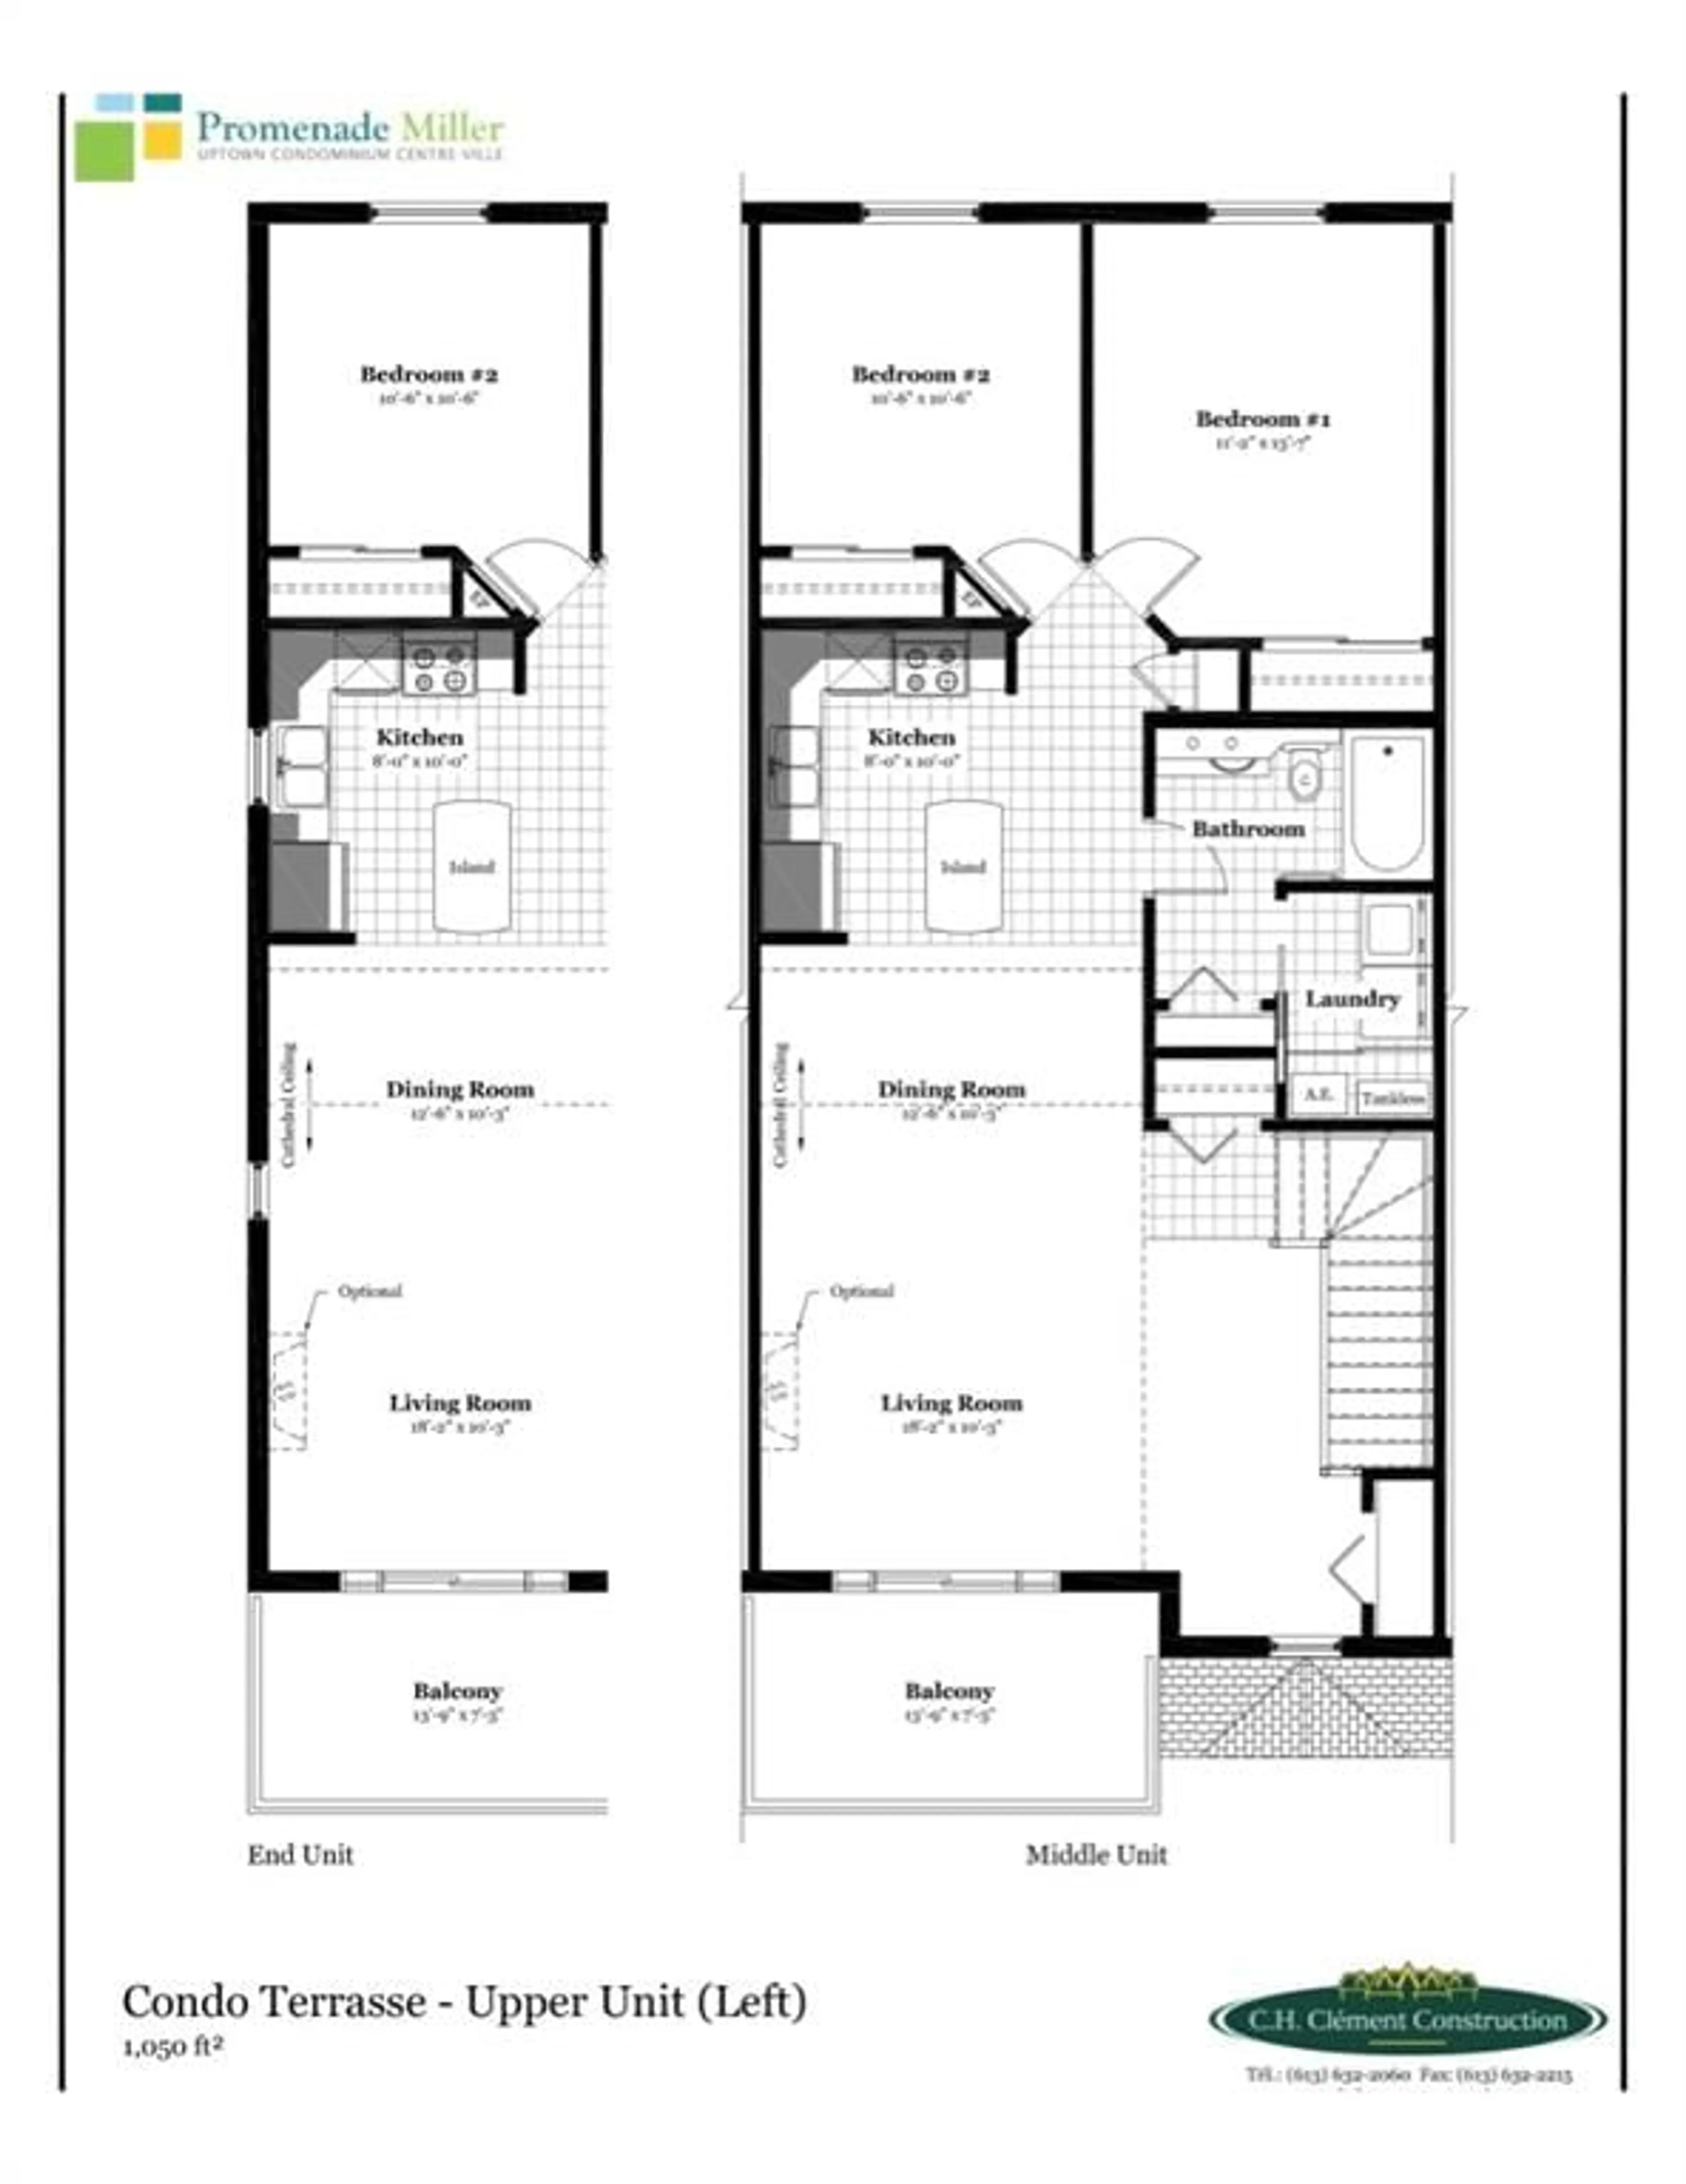 Floor plan for U12-1.0 WATER St, Cornwall Ontario K6H 0G2